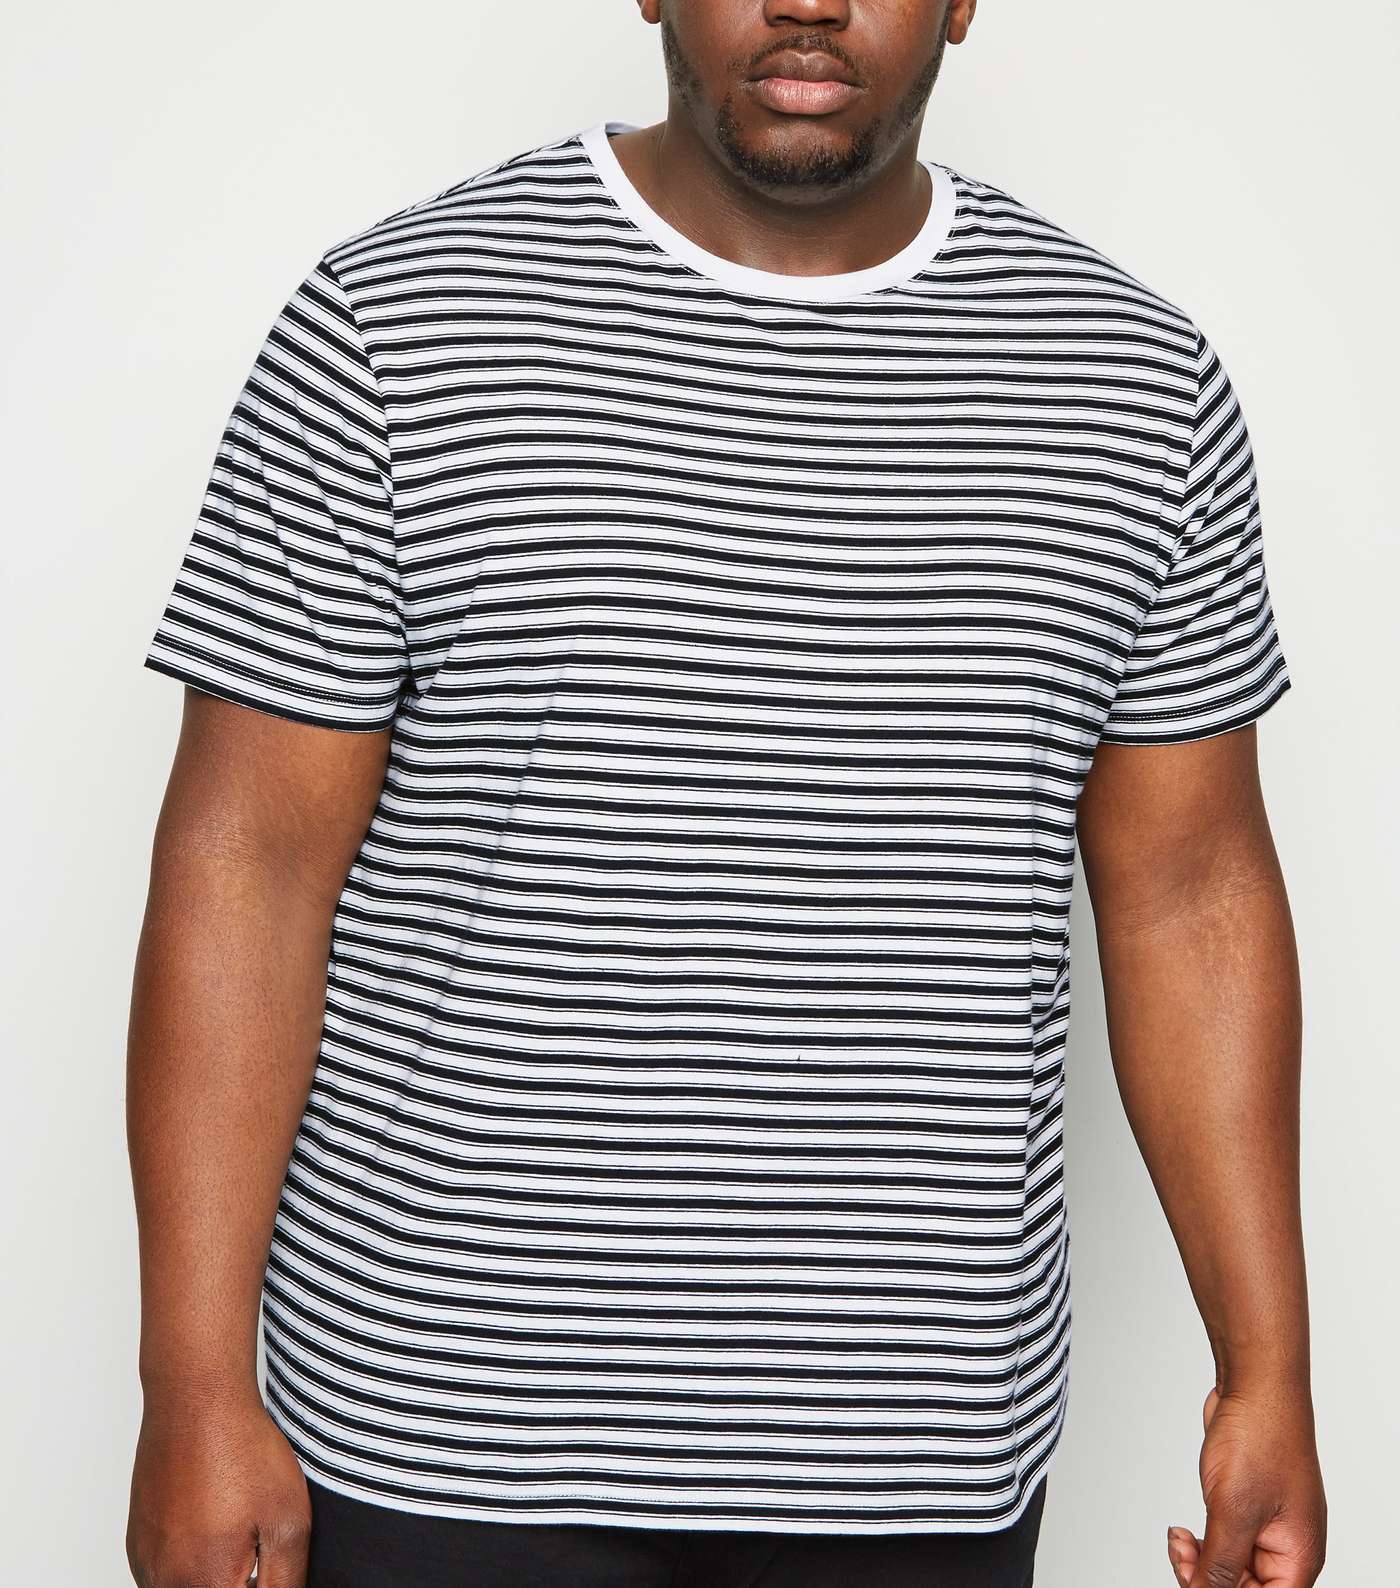 Plus Size Black Stripe T-Shirt